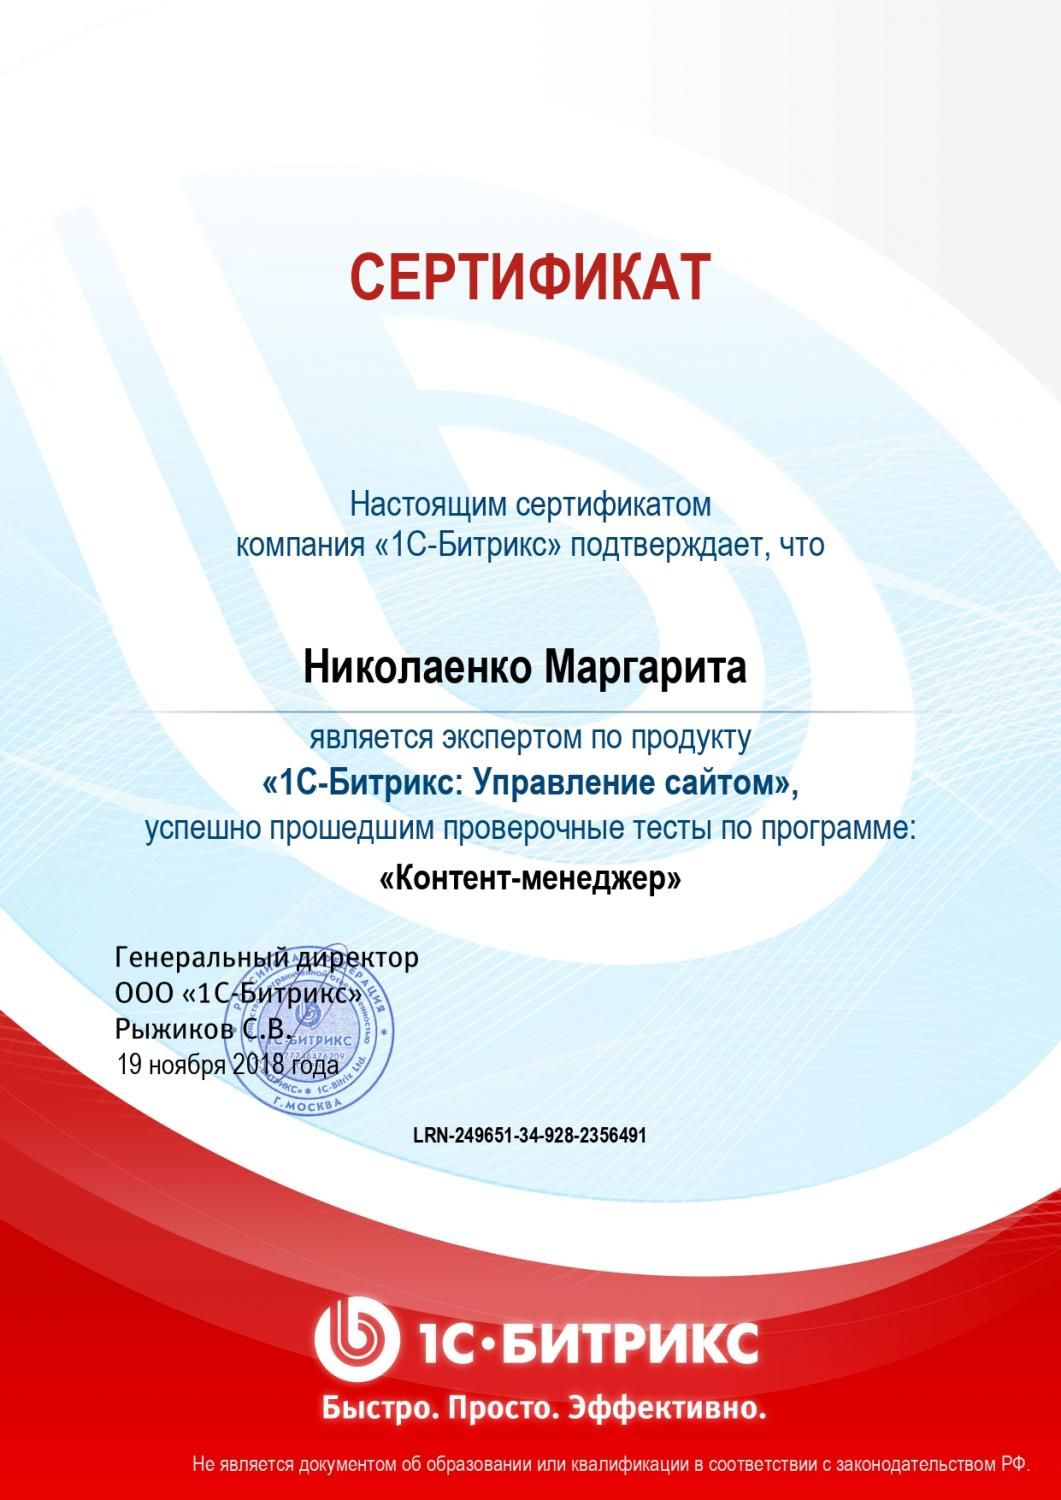 Сертификат эксперта по программе "Контент-менеджер" - Николаенко М. в Улан-Удэ